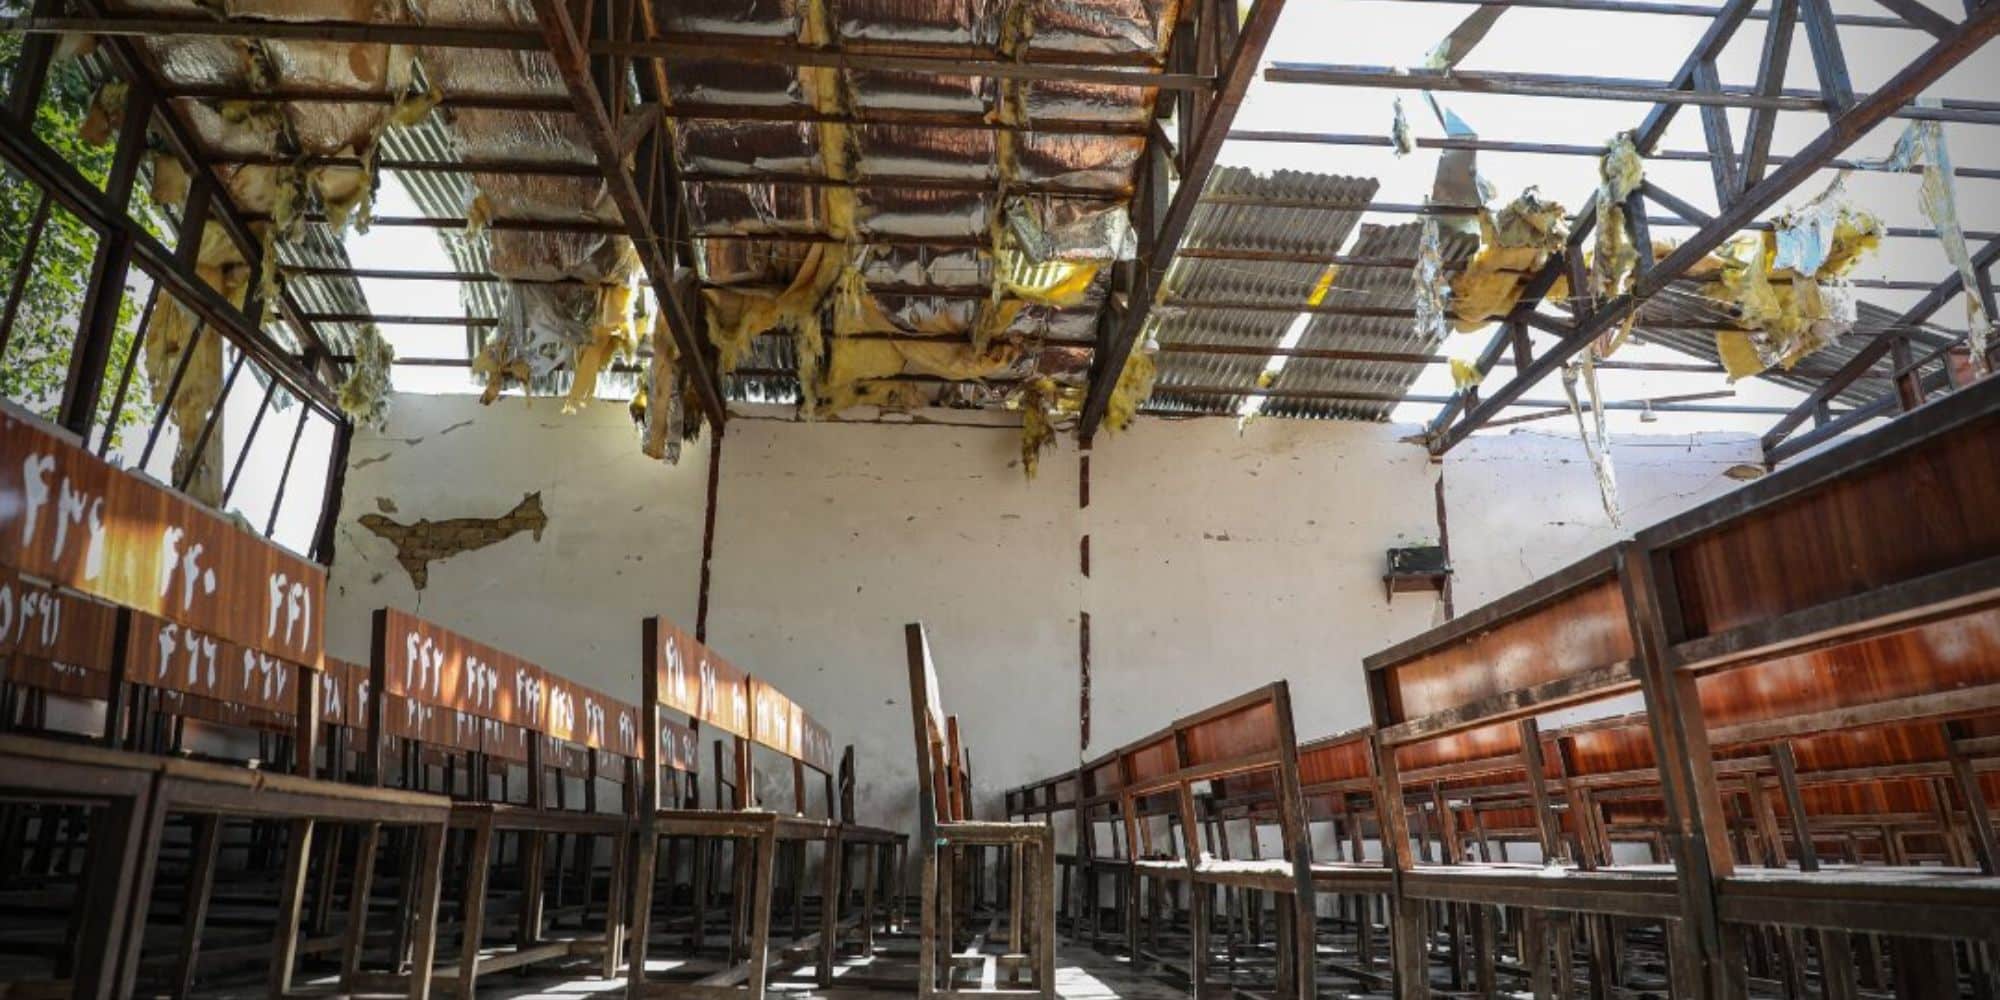 Η αίθουσα που εκτυλίχθηκε η τραγωδία στην Αφγανιστάν